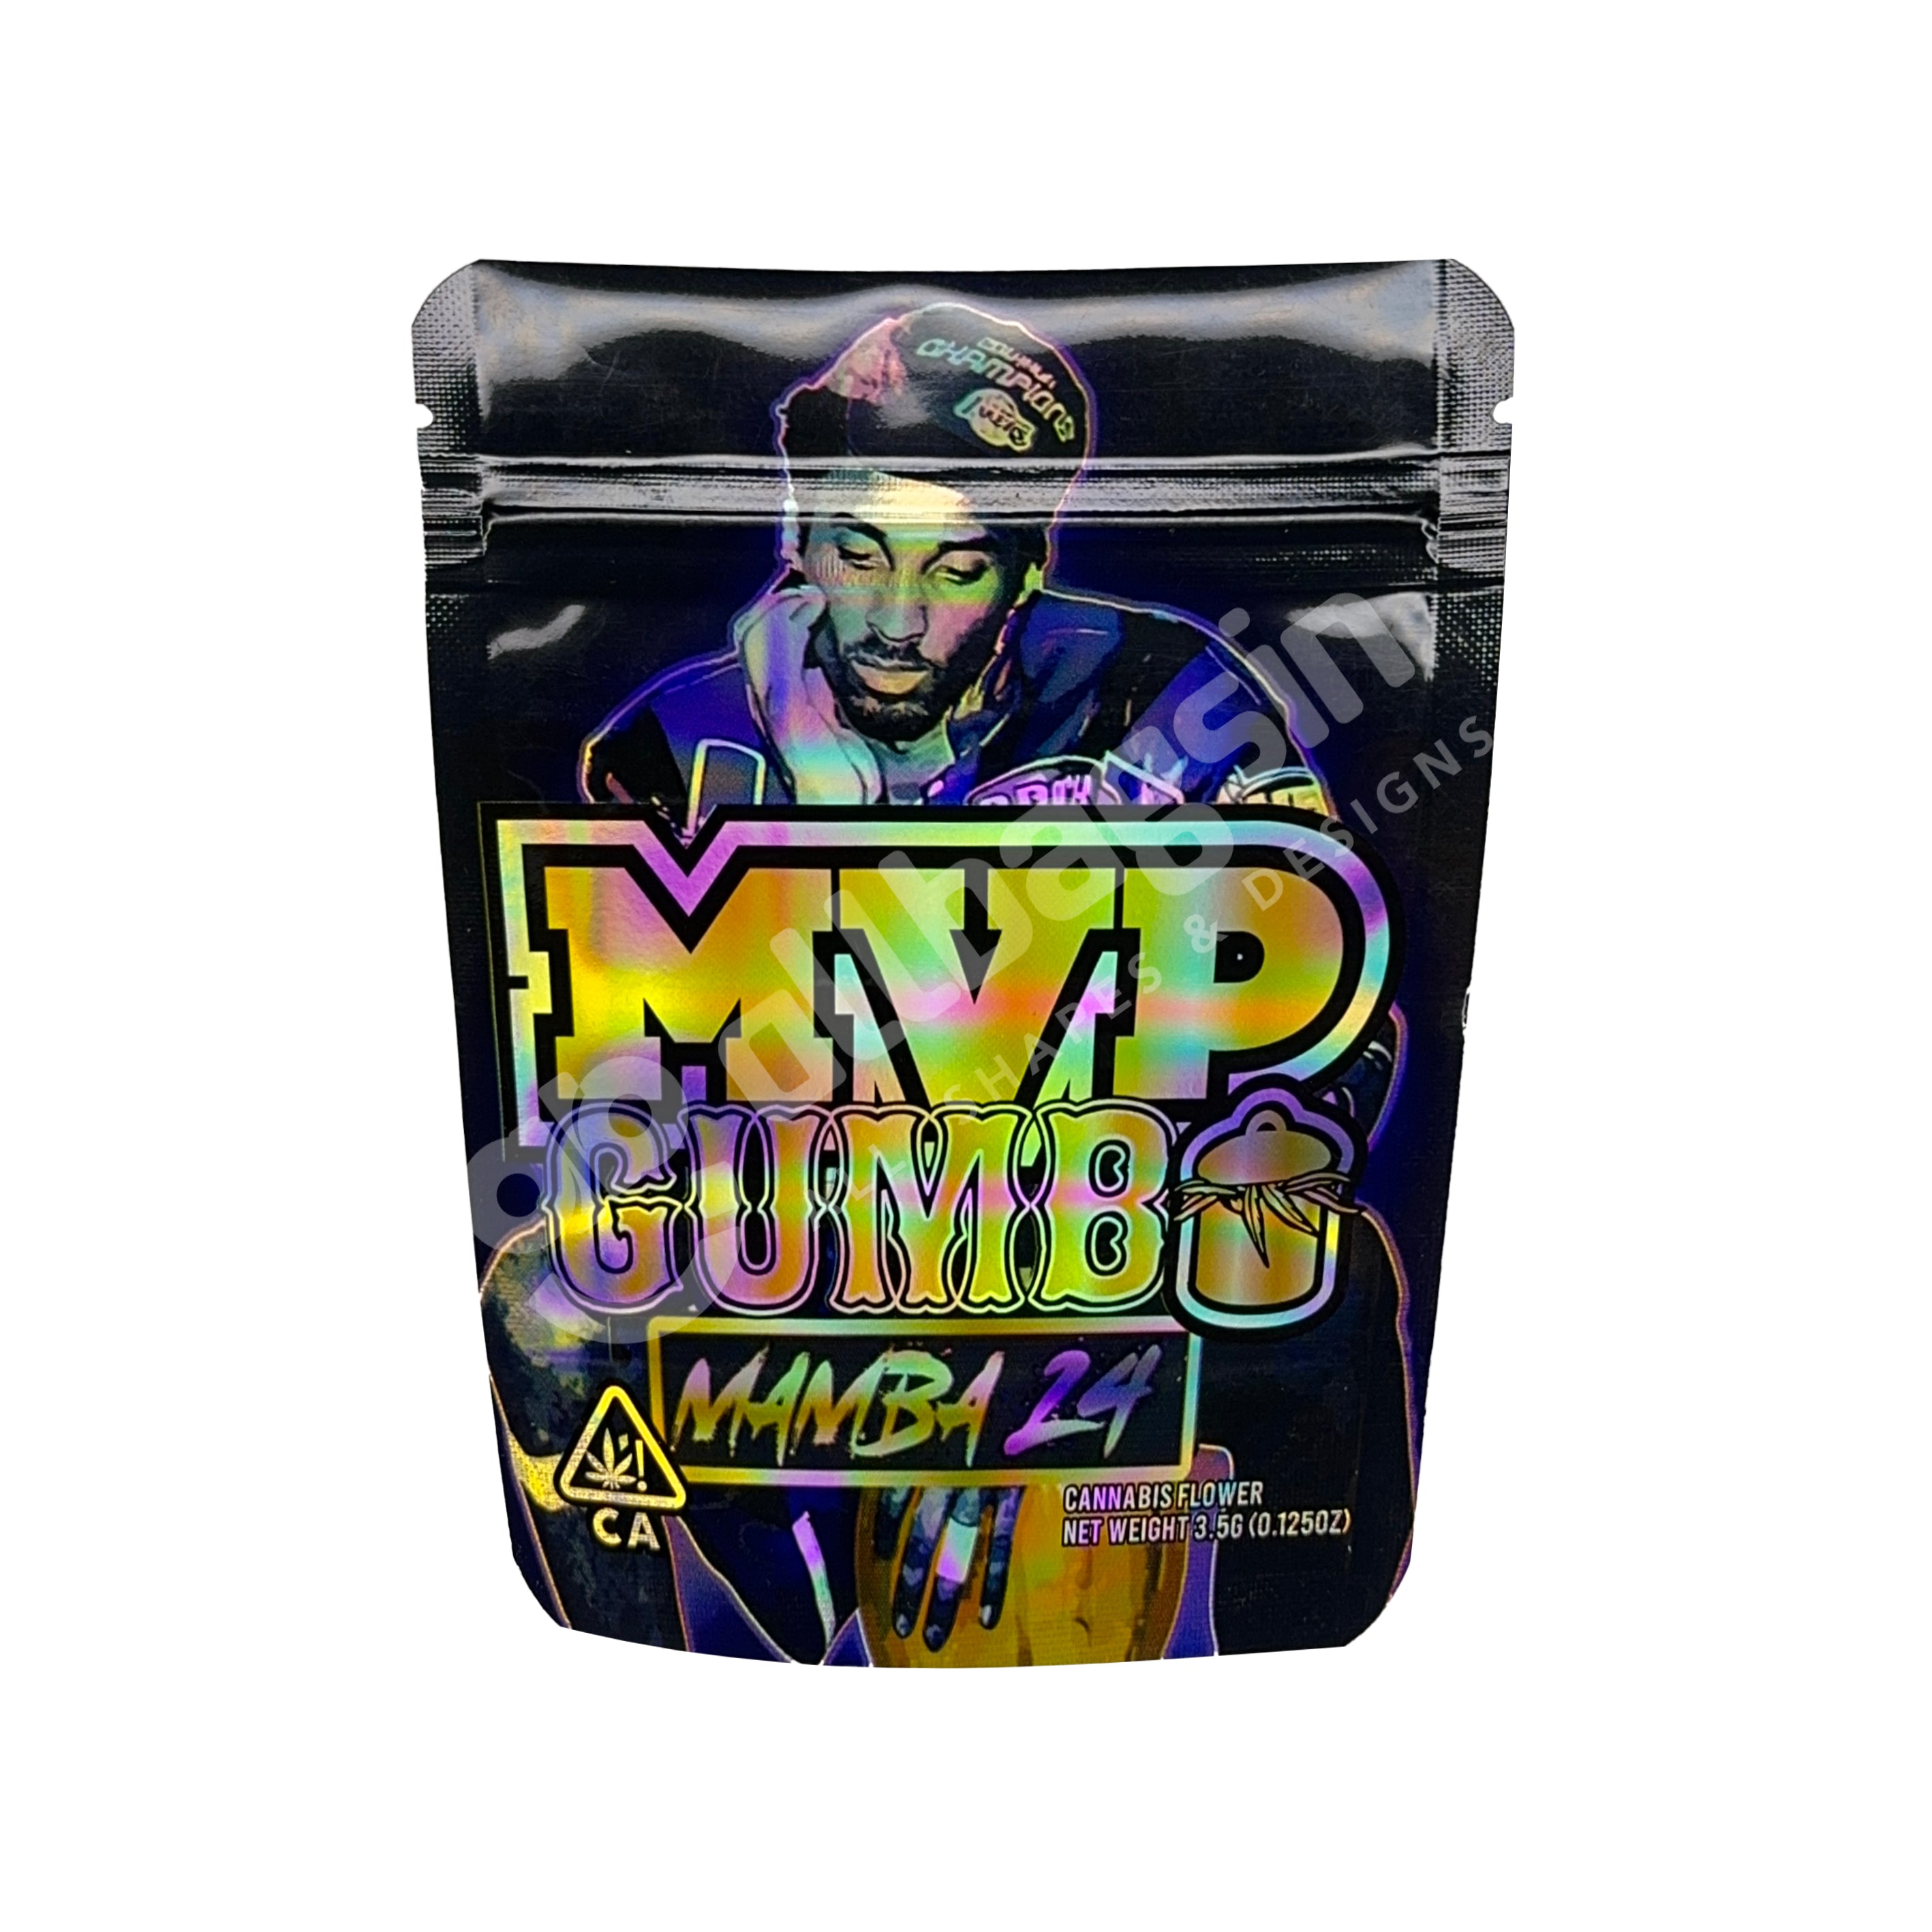 Purple Kobe MVP Gumbo Mamba 24 3.5g Mylar Bag